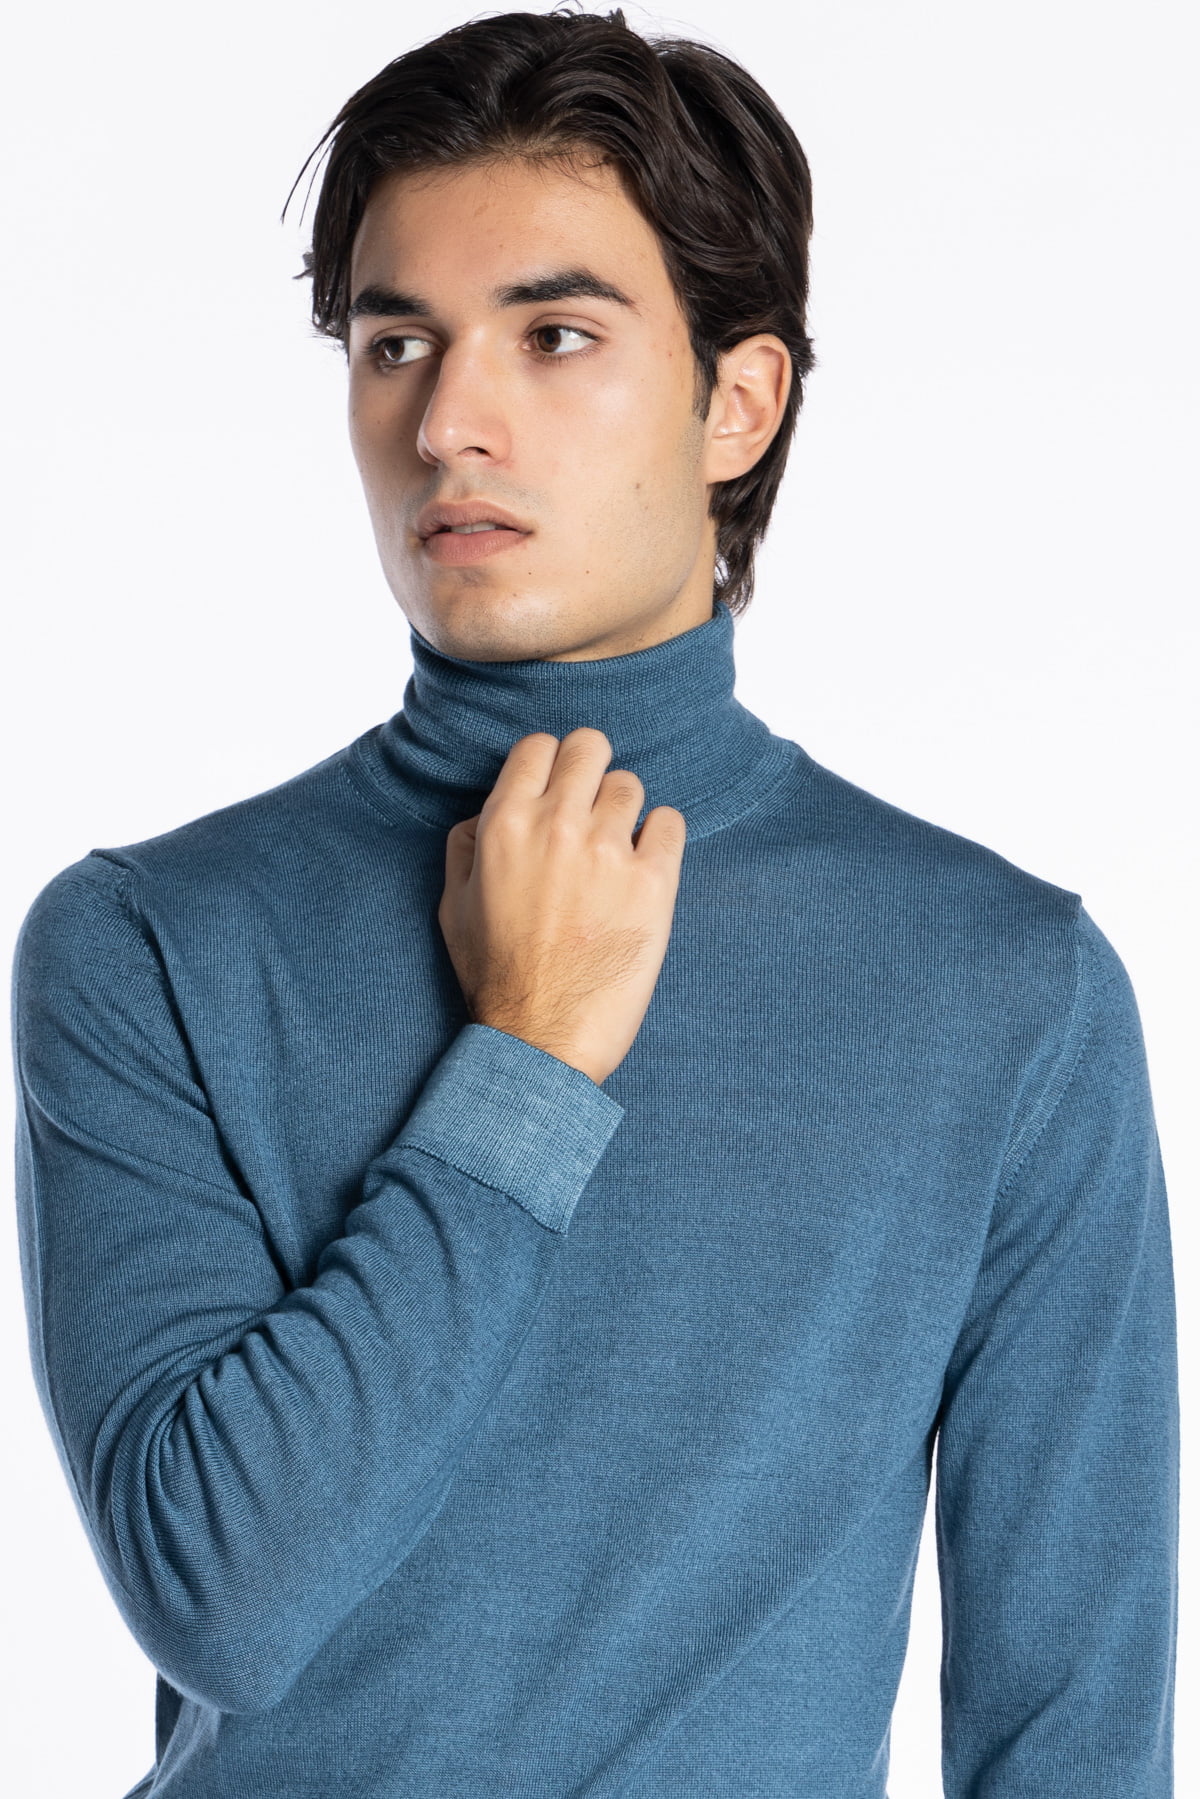 Maglione da uomo collo alto color ottanio lana merinos effetto stone wash maniche lunghe.